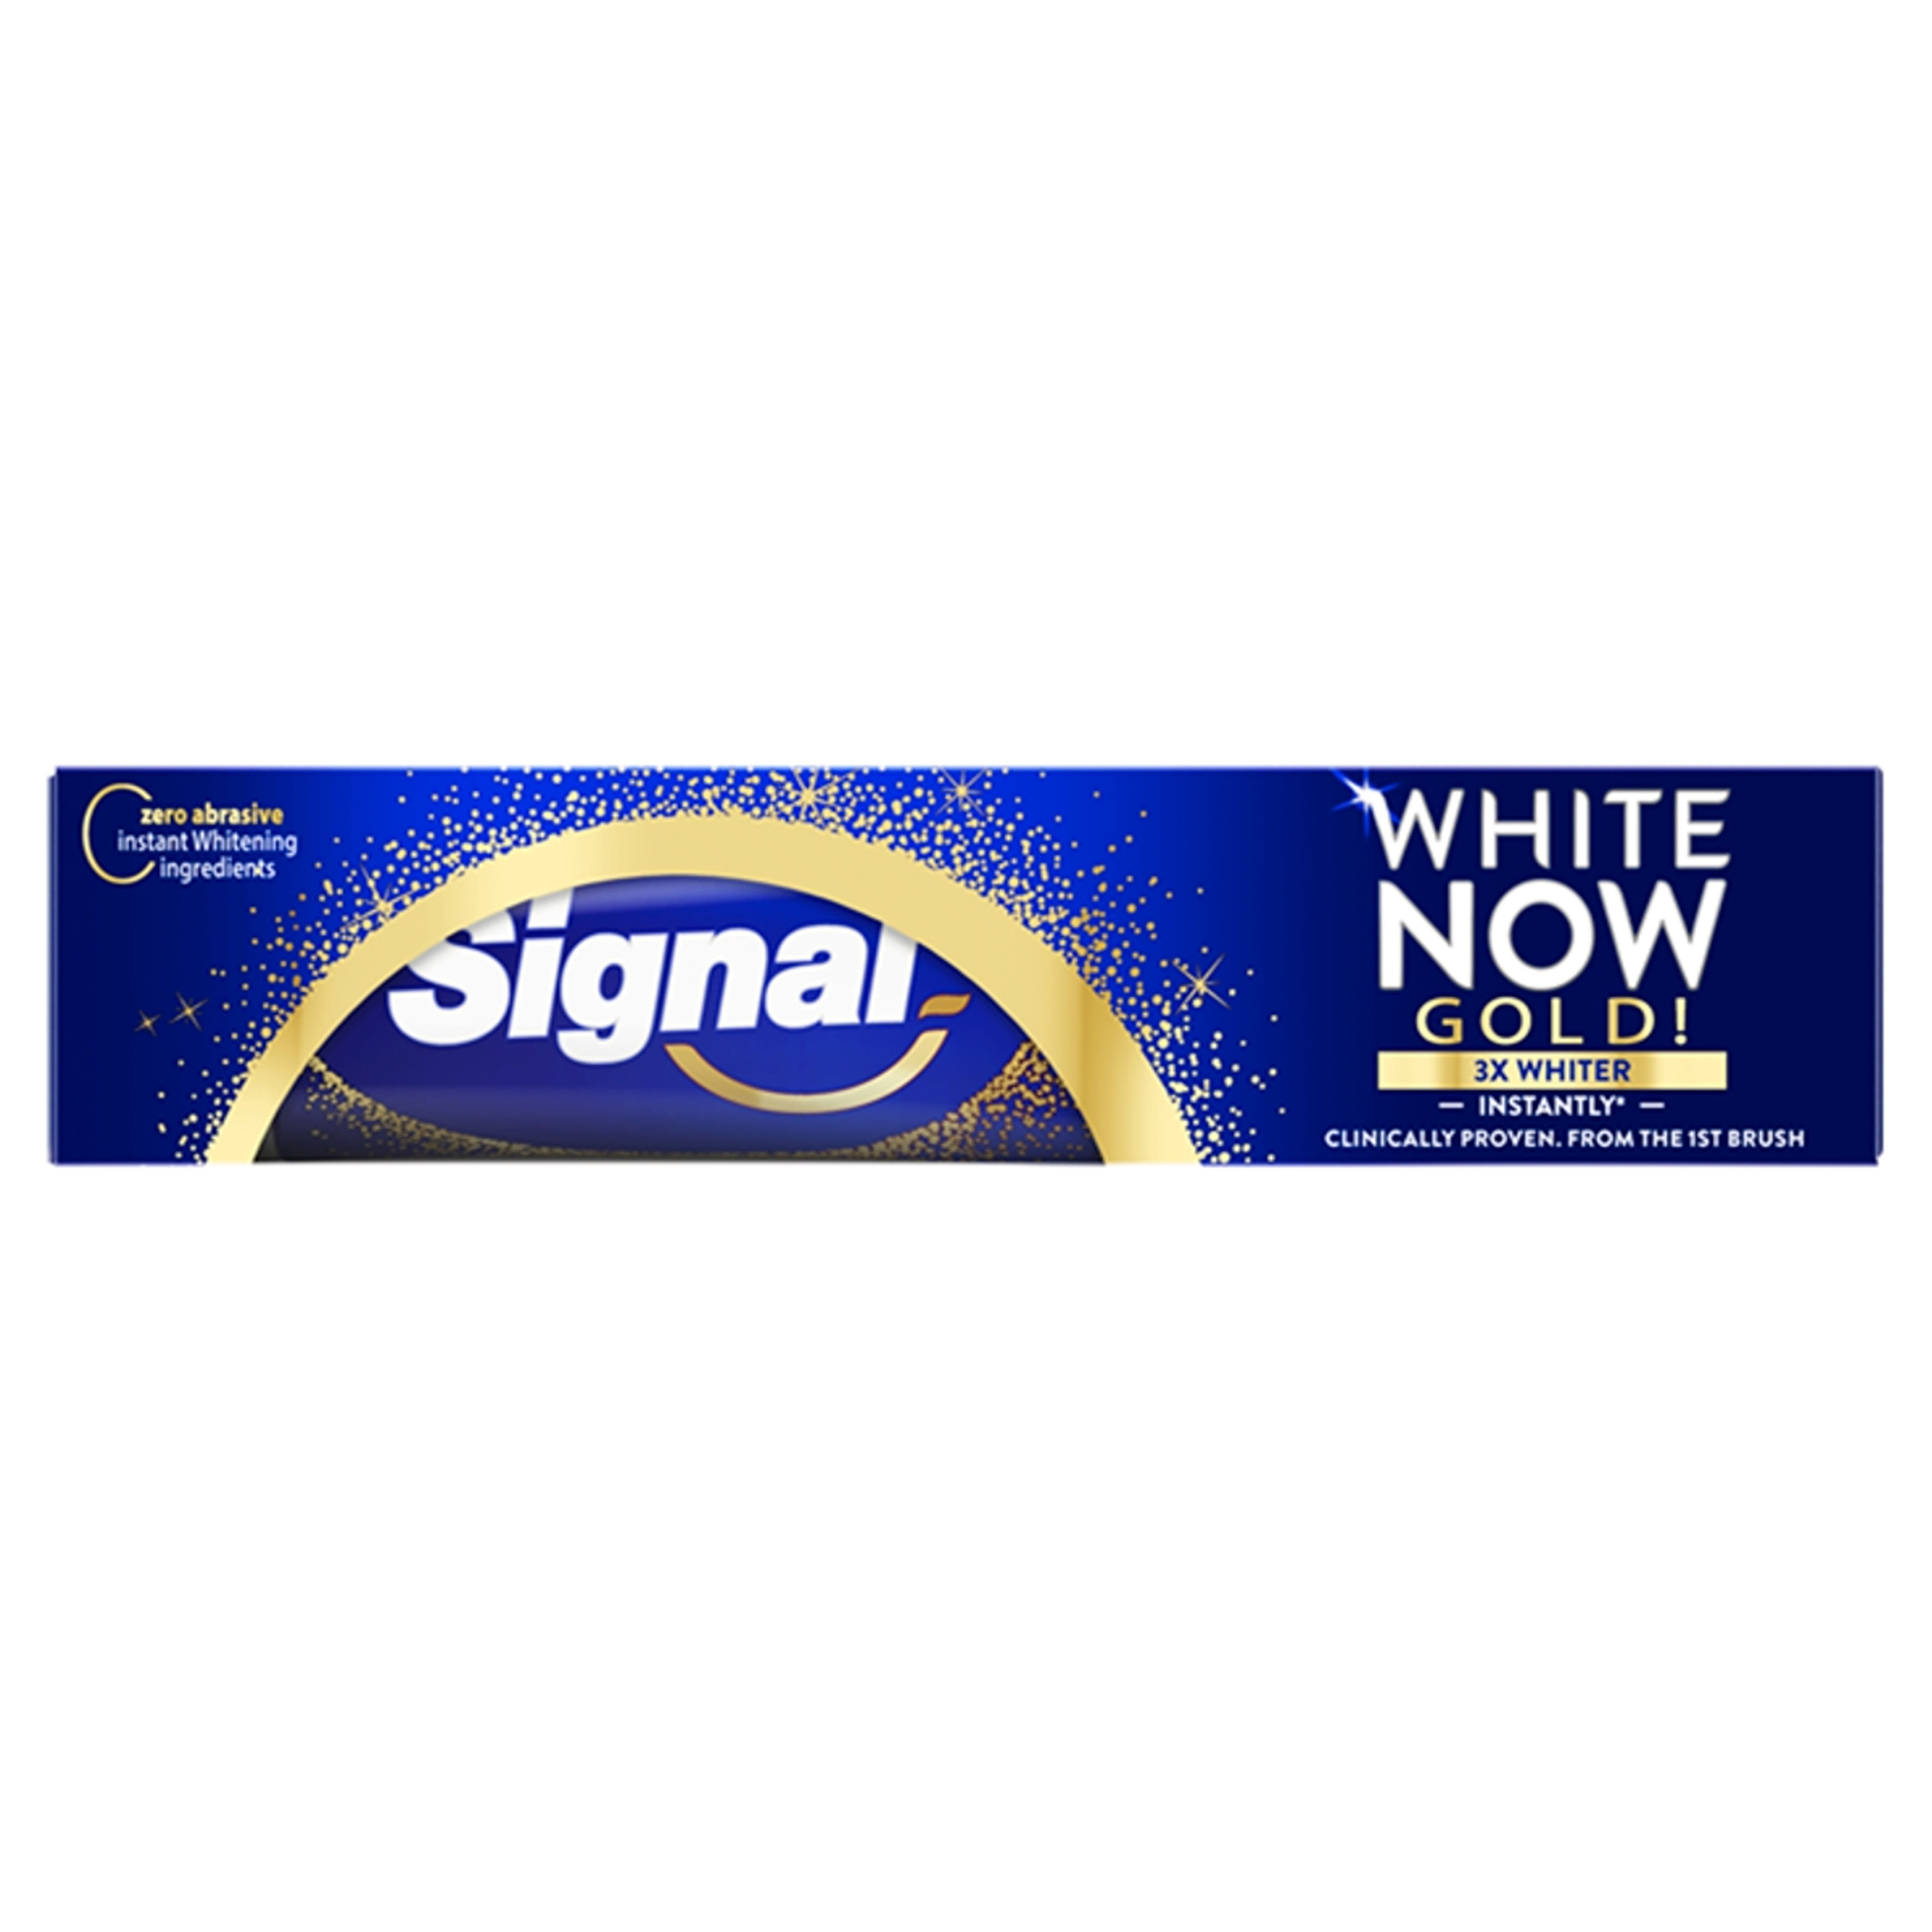 Signal White Now Gold fogkrém - 75 ml-1